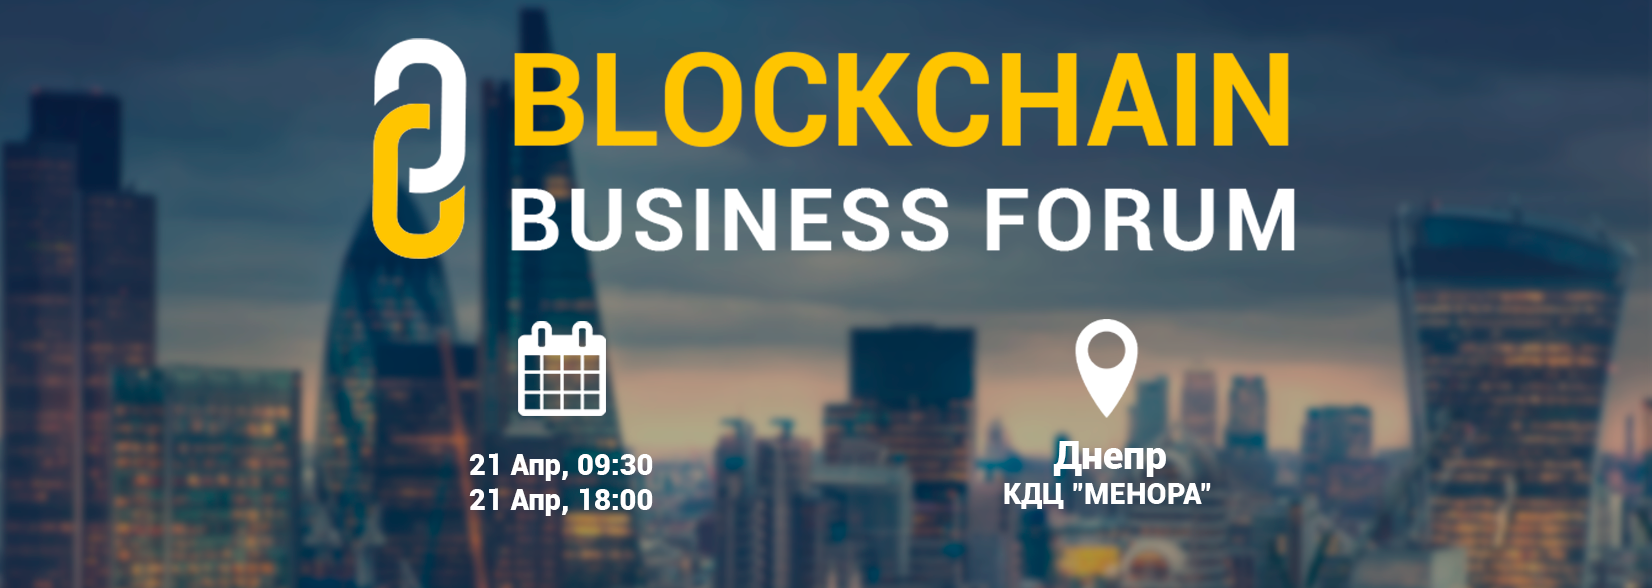 Первый Blockchain Business Forum в Украине (Видеообзор)